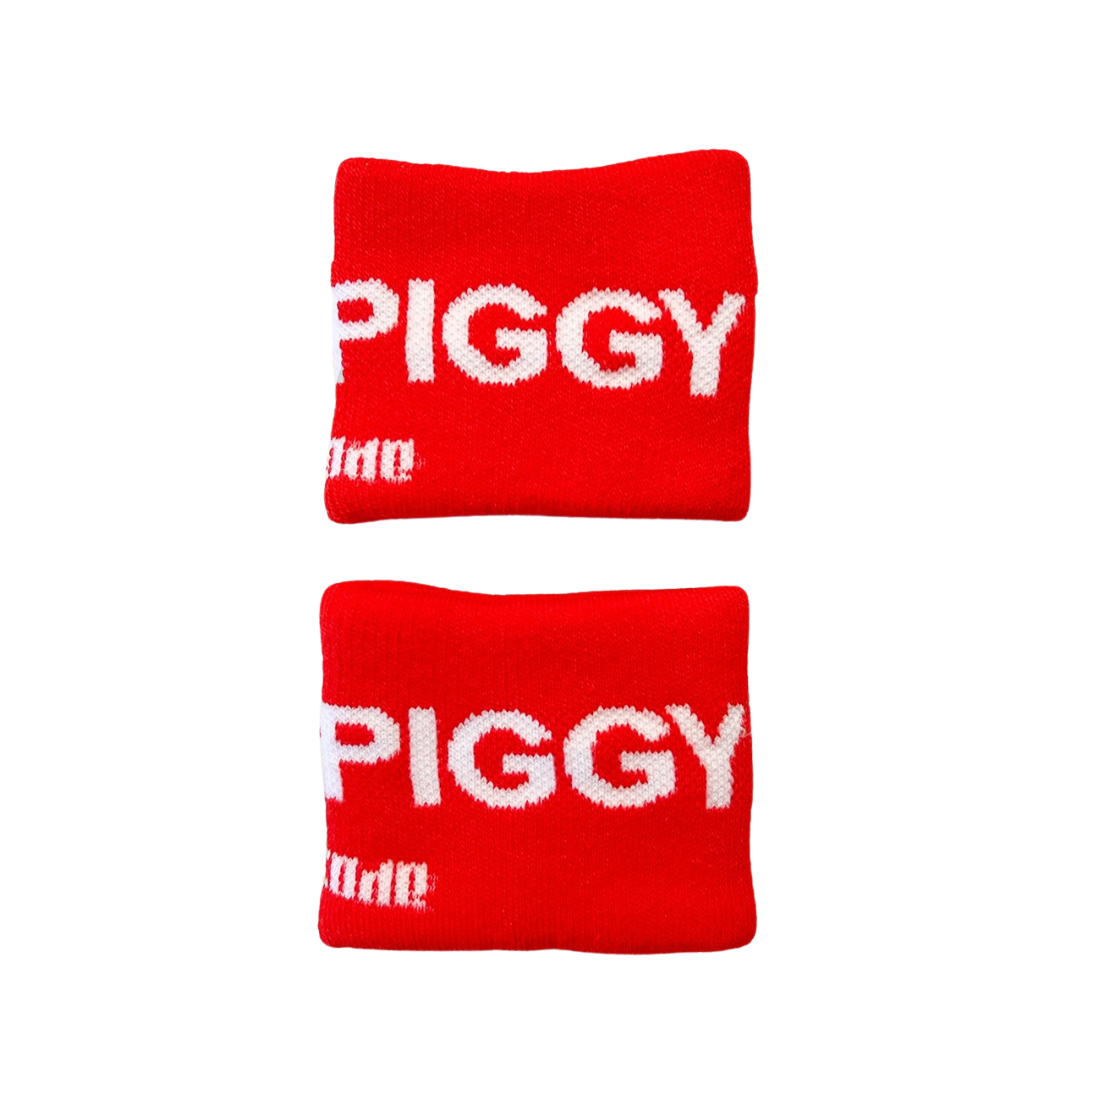 2 'Piggy Identity' Polsbandjes ontworpen door Barcode. Perfect voor gay mannen en te koop bij Flavourez.